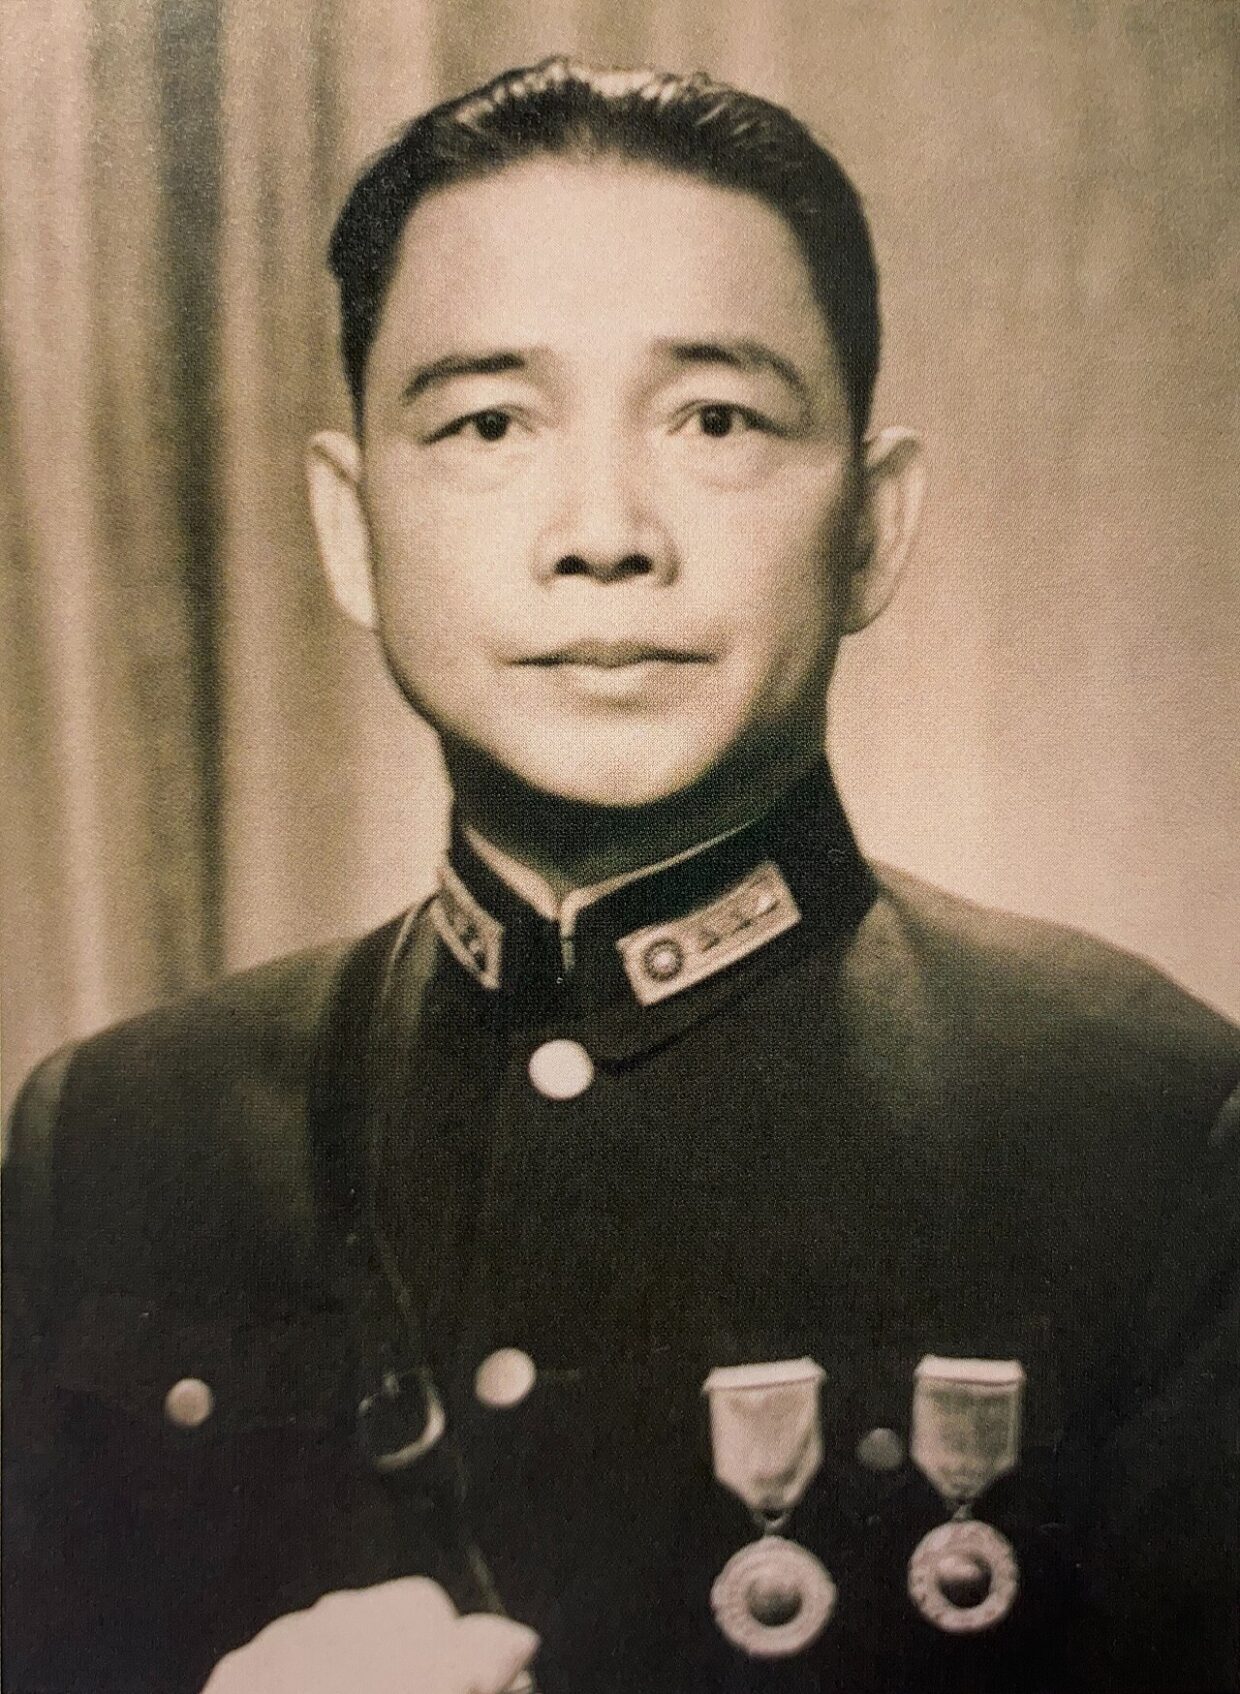 Wang Jingwei